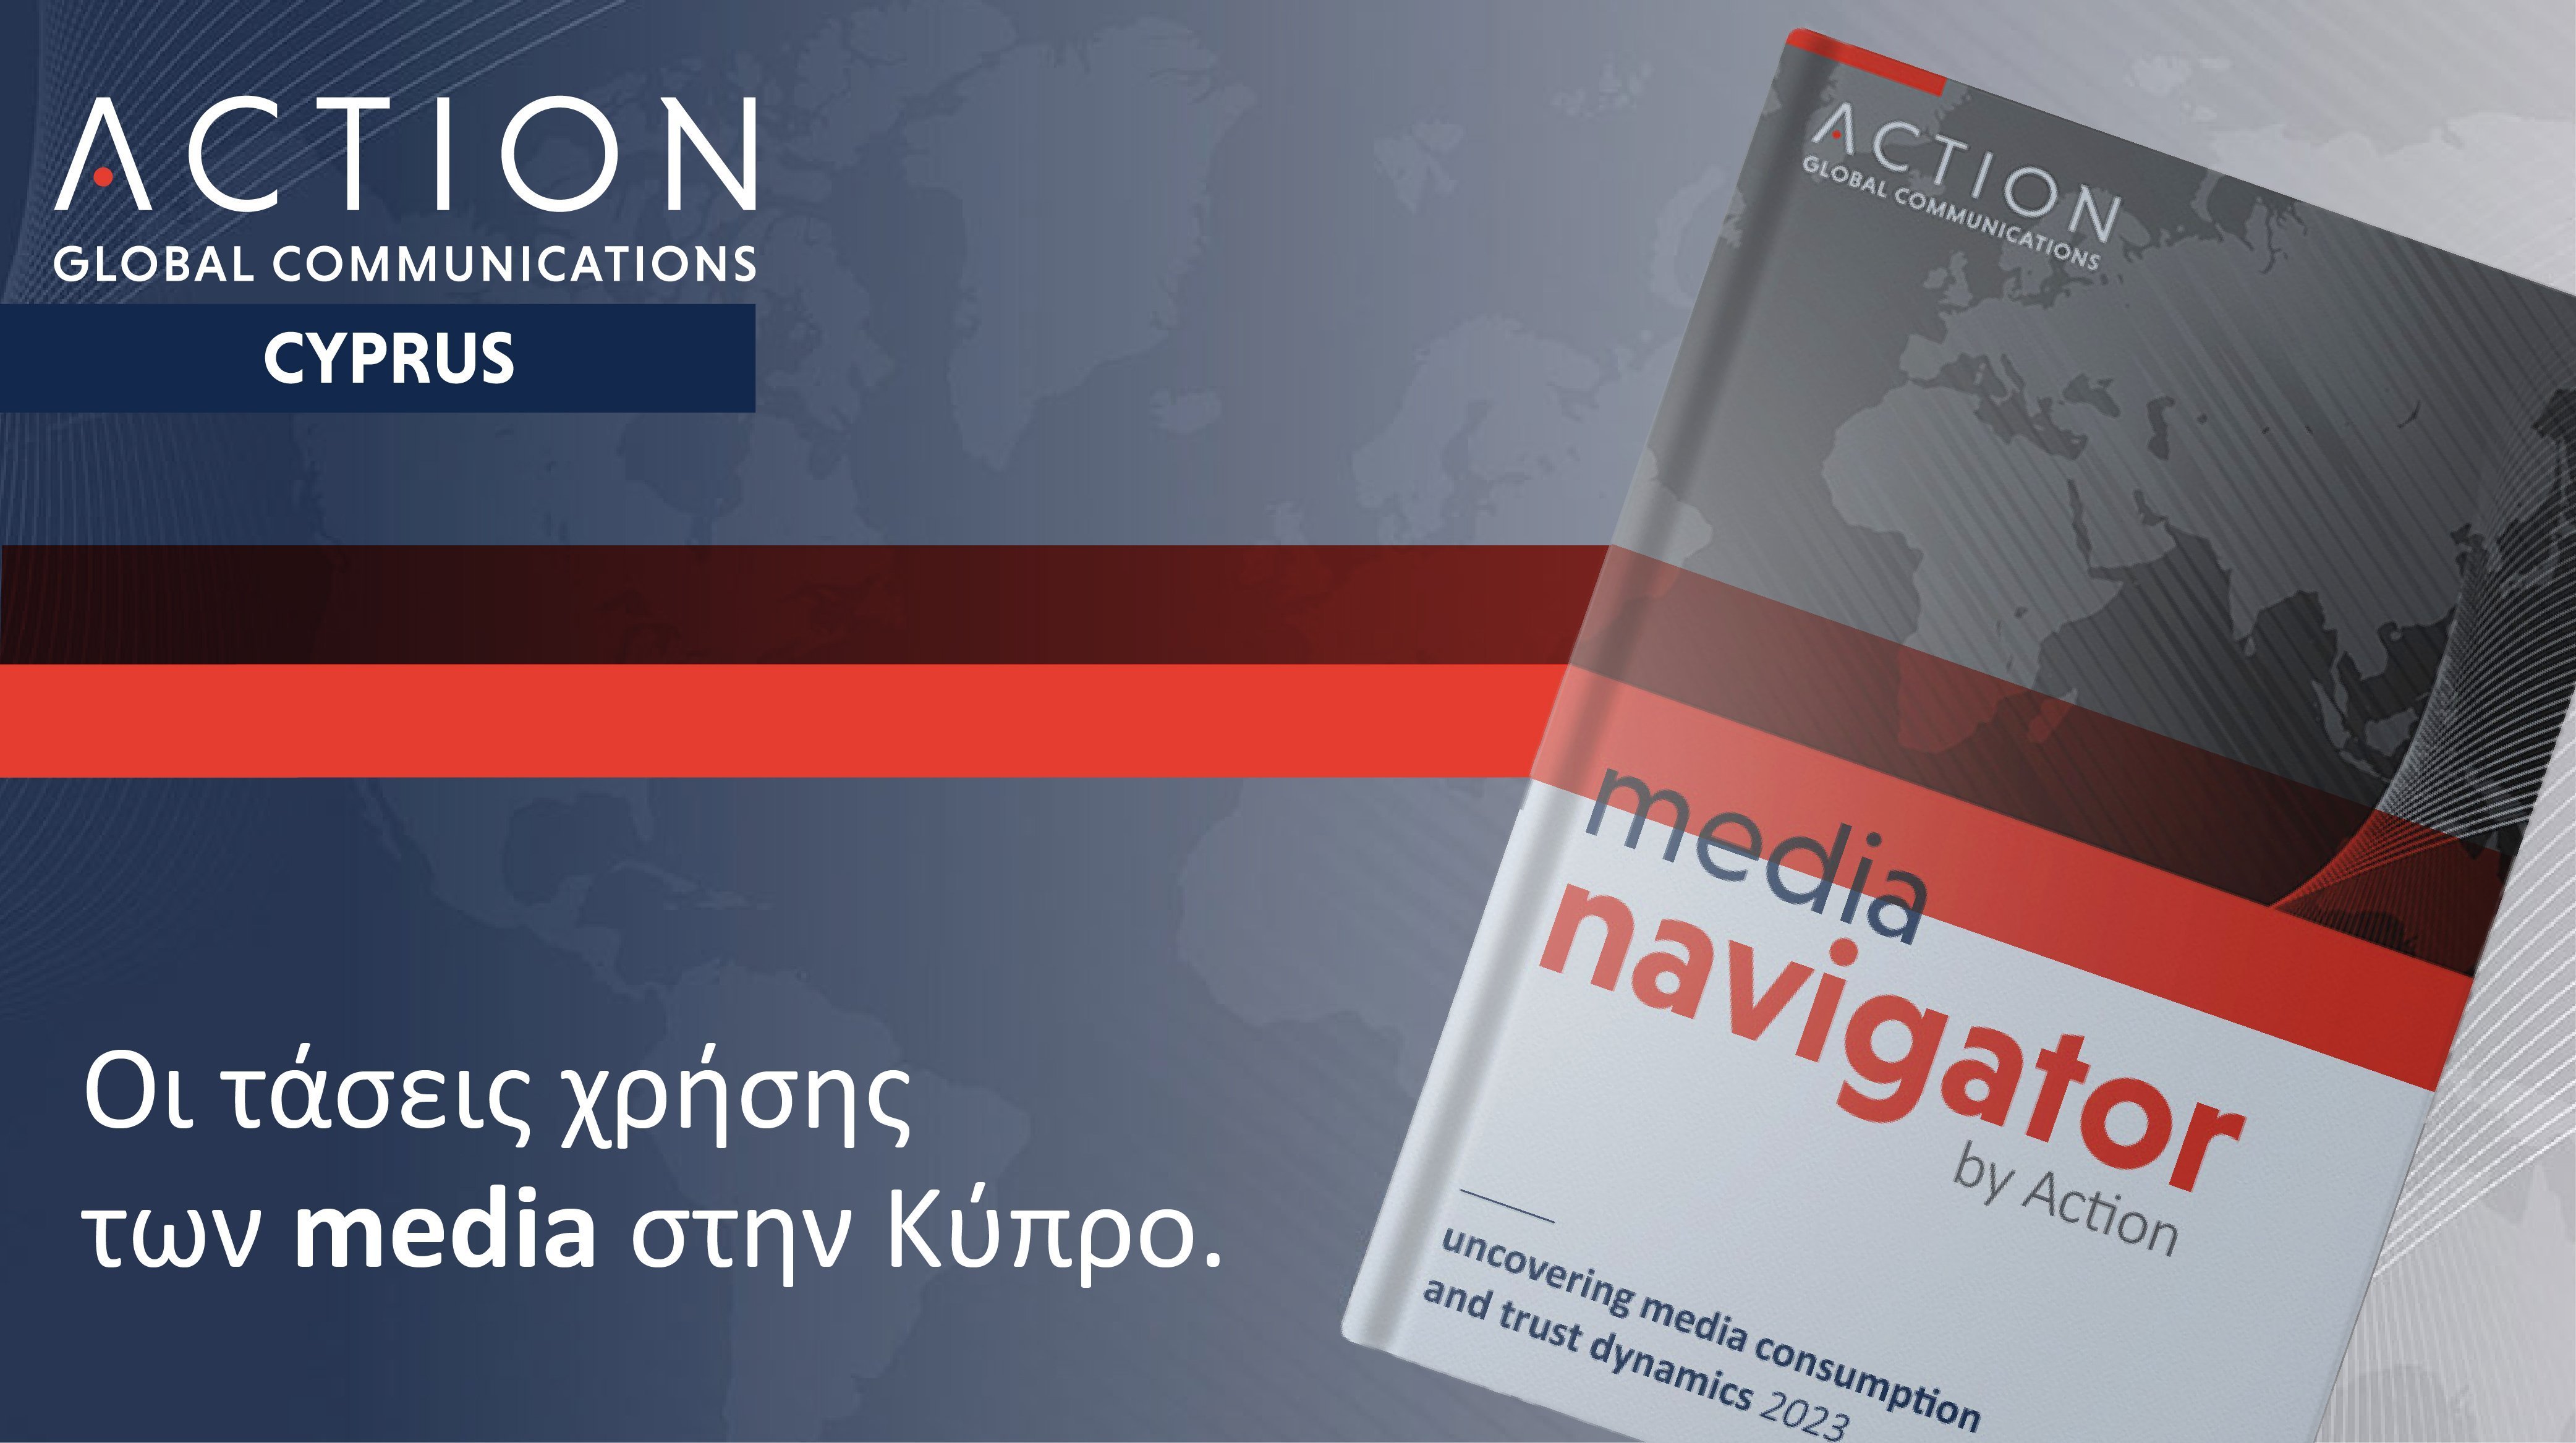 Νέα έρευνα από την Action Global Communications αποκαλύπτει τις τάσεις χρήσεις των media σε 7 χώρες